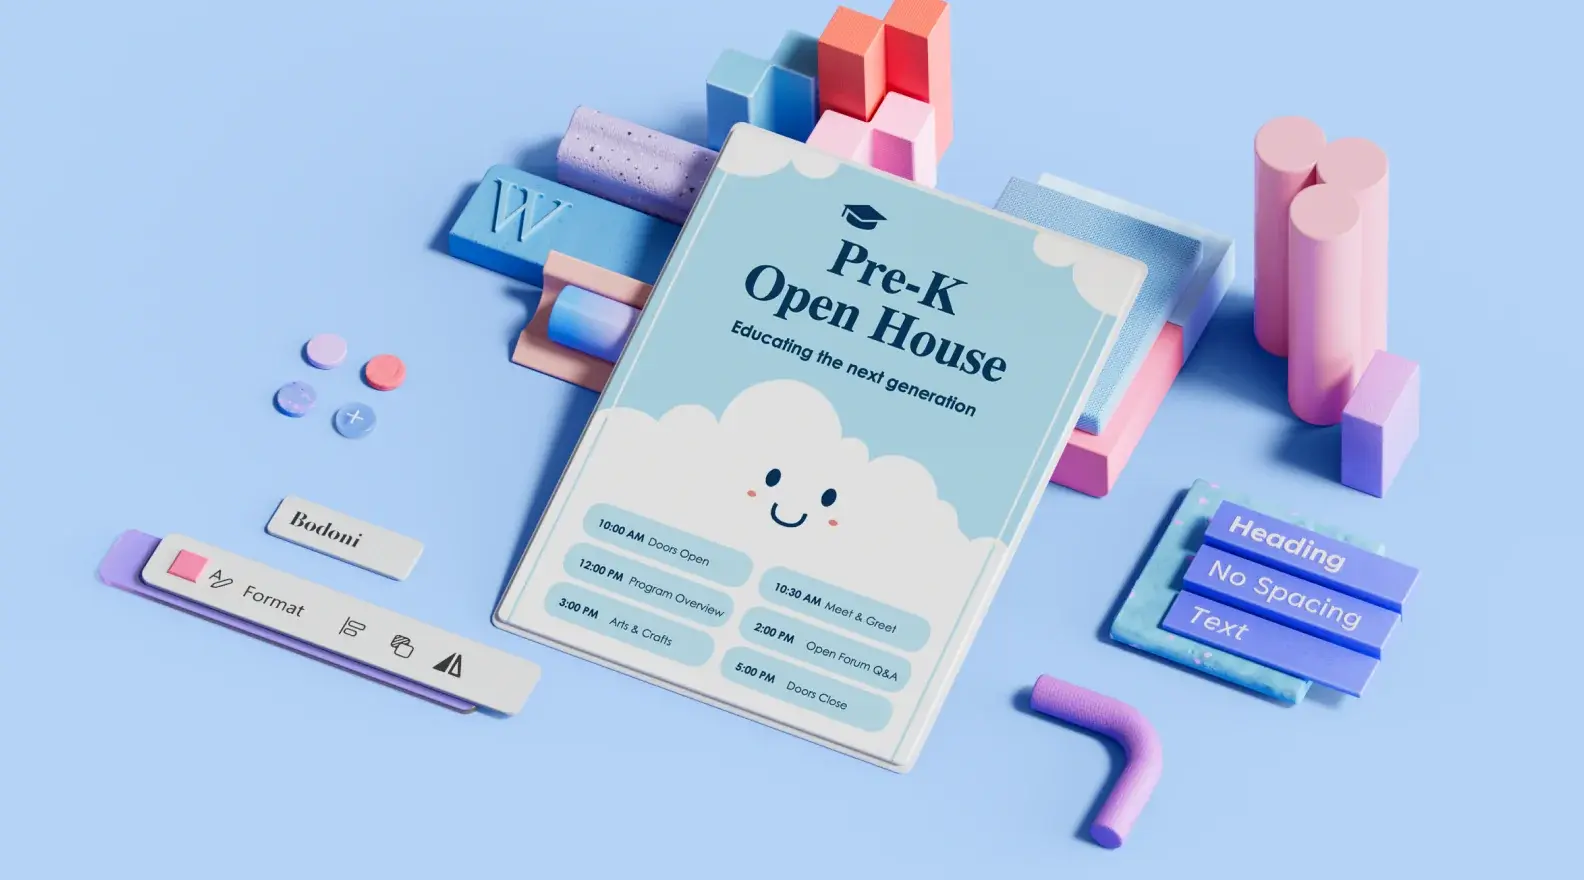 Óvodai nyílt napot hirdető plakát sablonja 3D-s tervezőelemekkel körülvéve